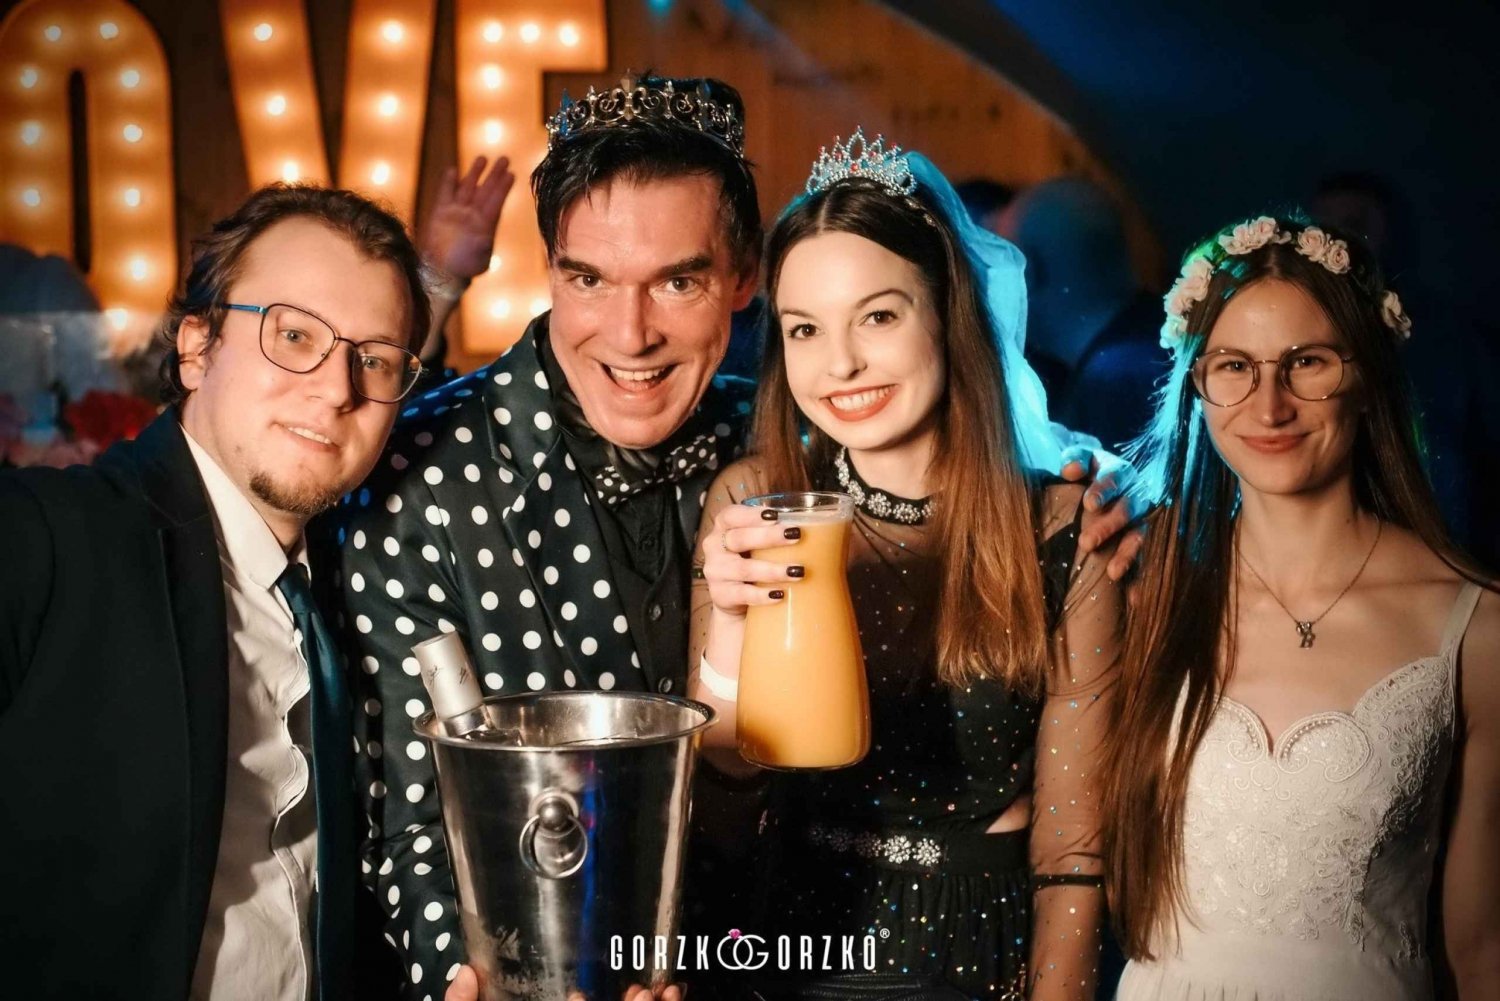 Gdańsk: Polskie przyjęcie weselne z drinkiem powitalnym